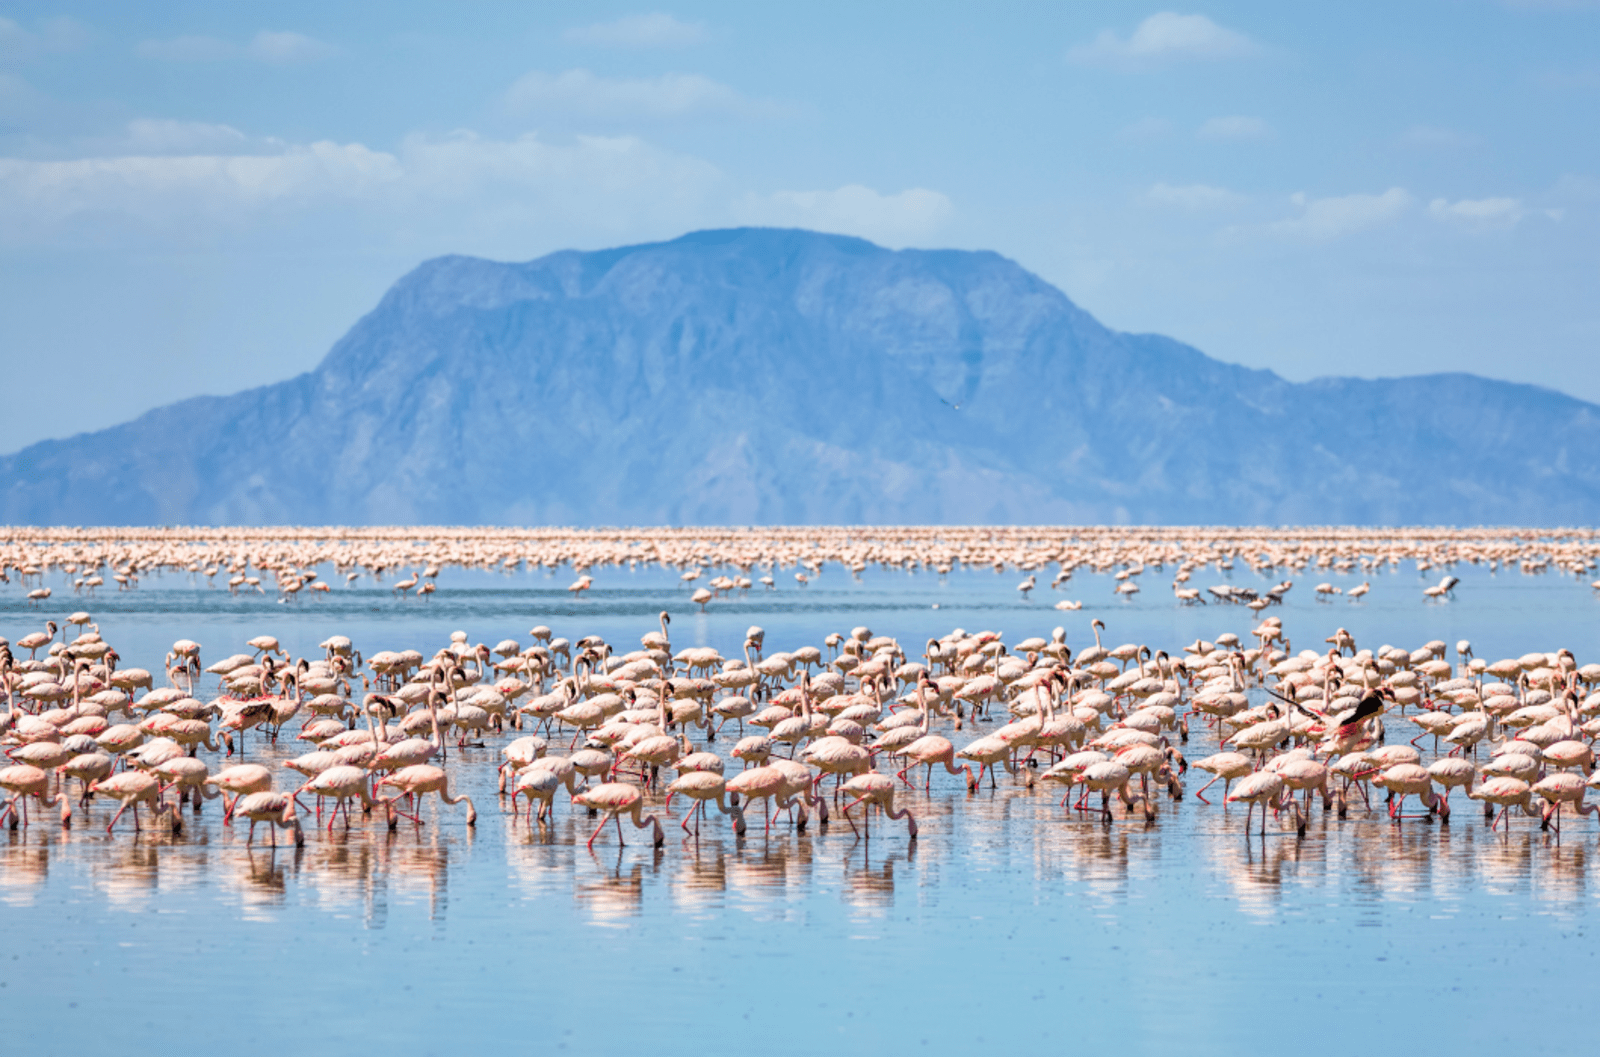 flamingos gathered on Lake Natron, Tanzania.